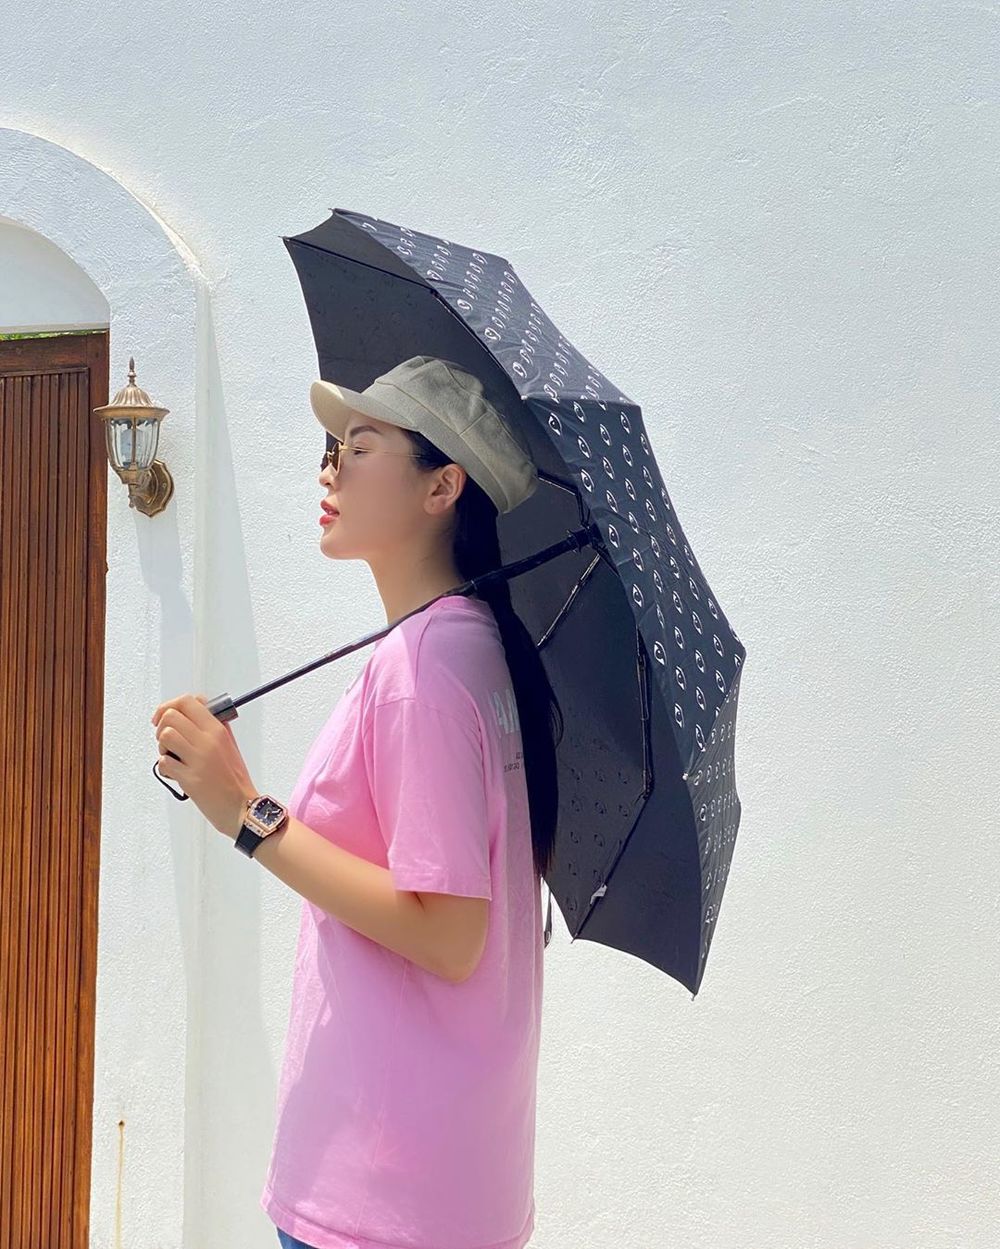  
Kỳ Duyên tránh cái nóng mùa hè với chiếc áo thun hồng đơn giản. Nàng Hậu đội nón, đeo mắt kính và cầm thêm dù xuống phố. (Ảnh: Instagram nhân vật)